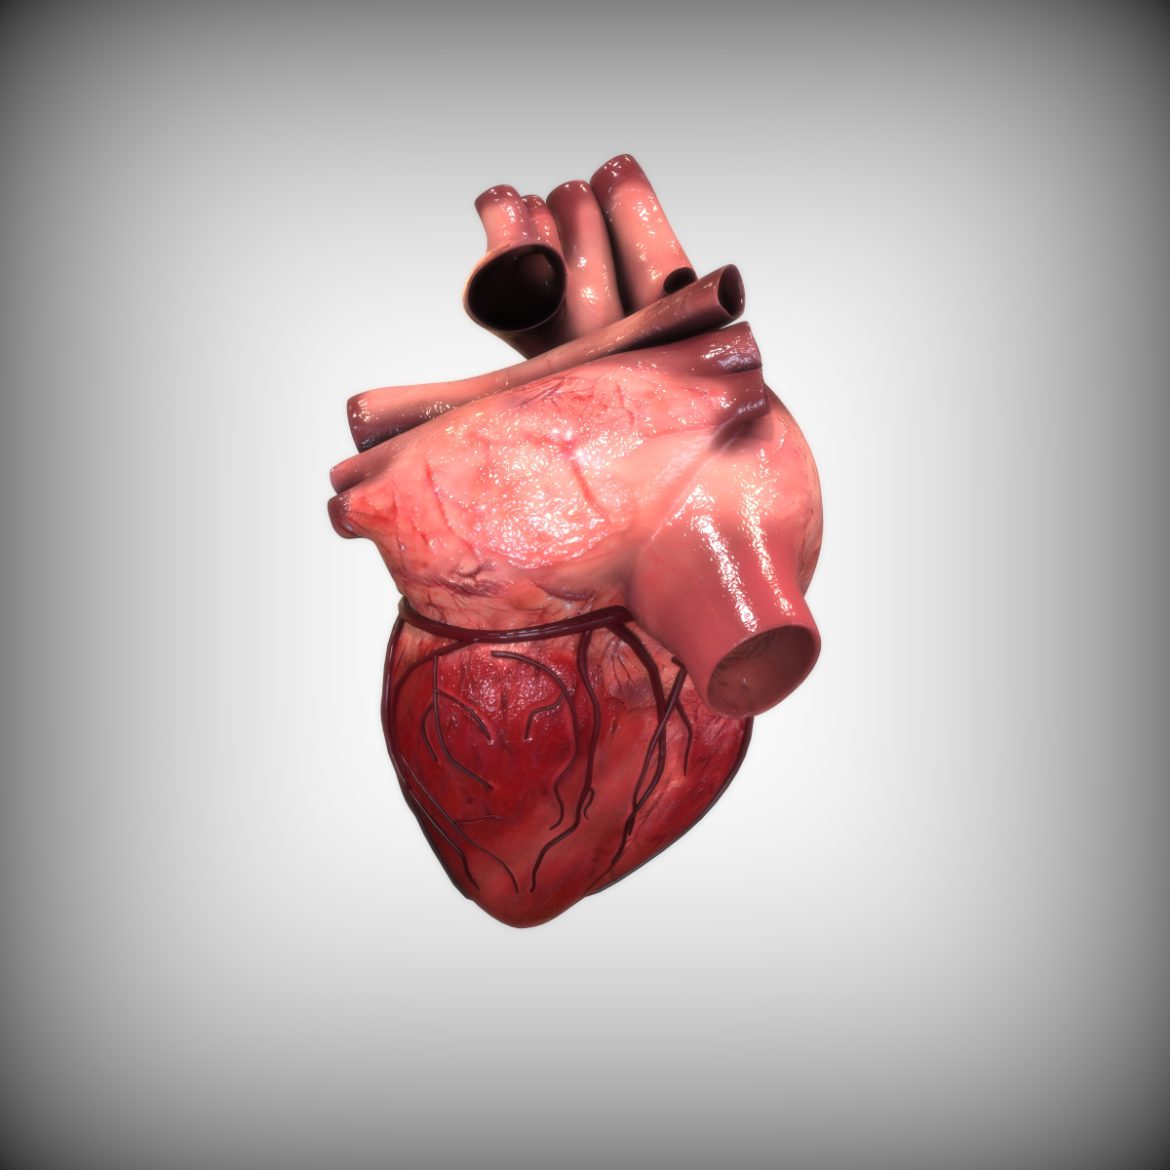  <a class="continue" href="https://www.flatpyramid.com/3d-models/medical-3d-models/anatomy/human-heart/">Continue Reading<span> Human Heart</span></a>